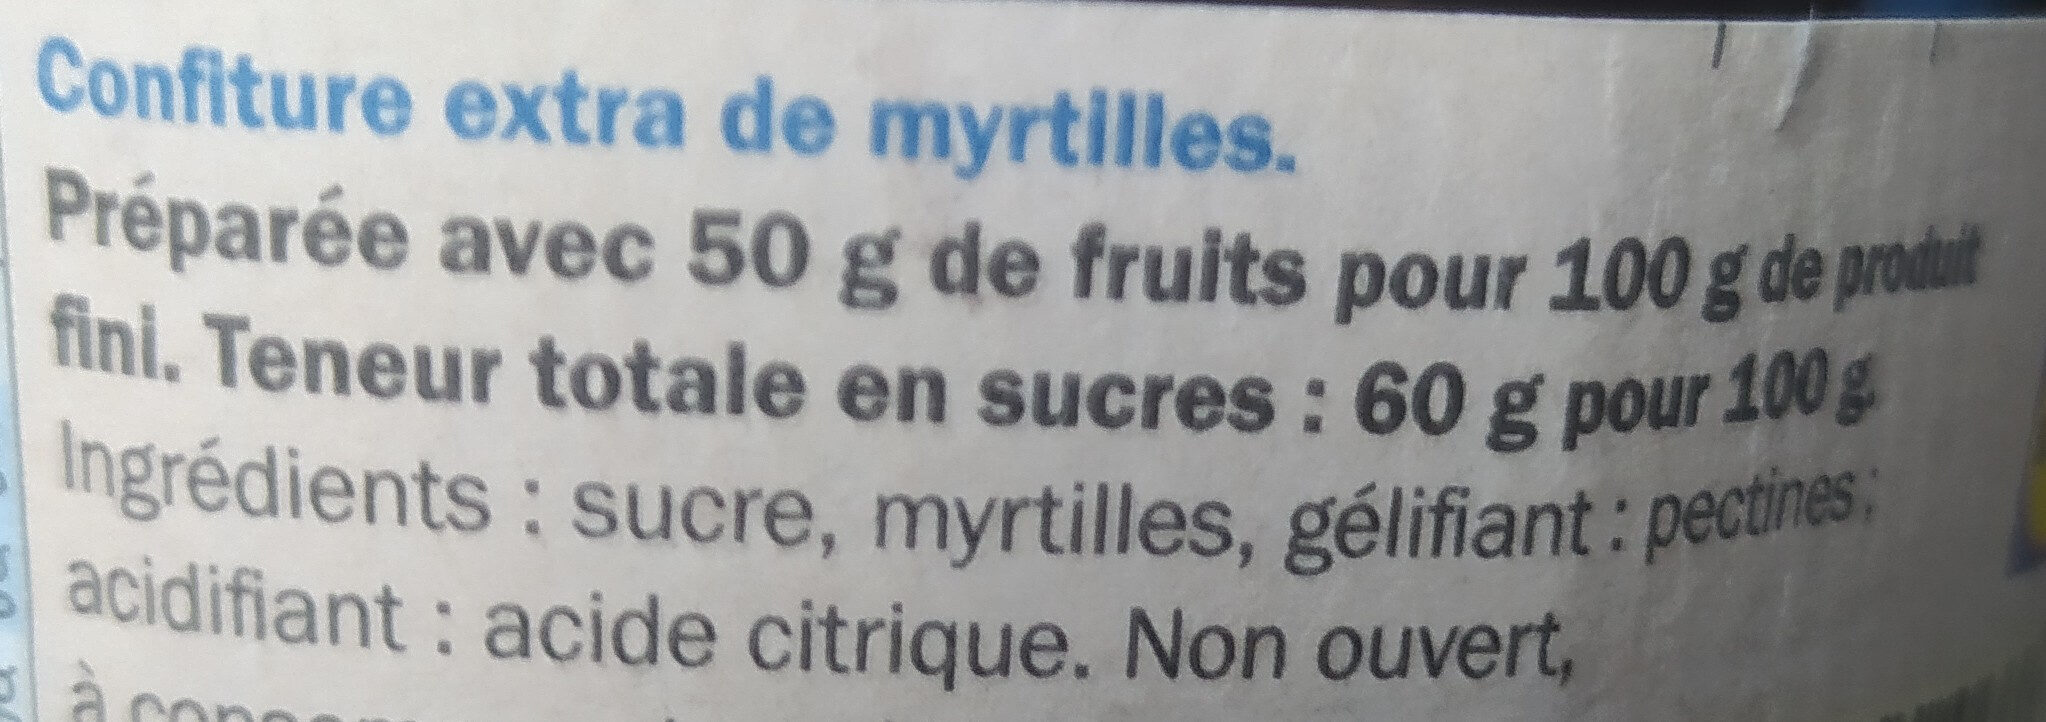 Confiture extra myrtilles - Ingrédients - fr